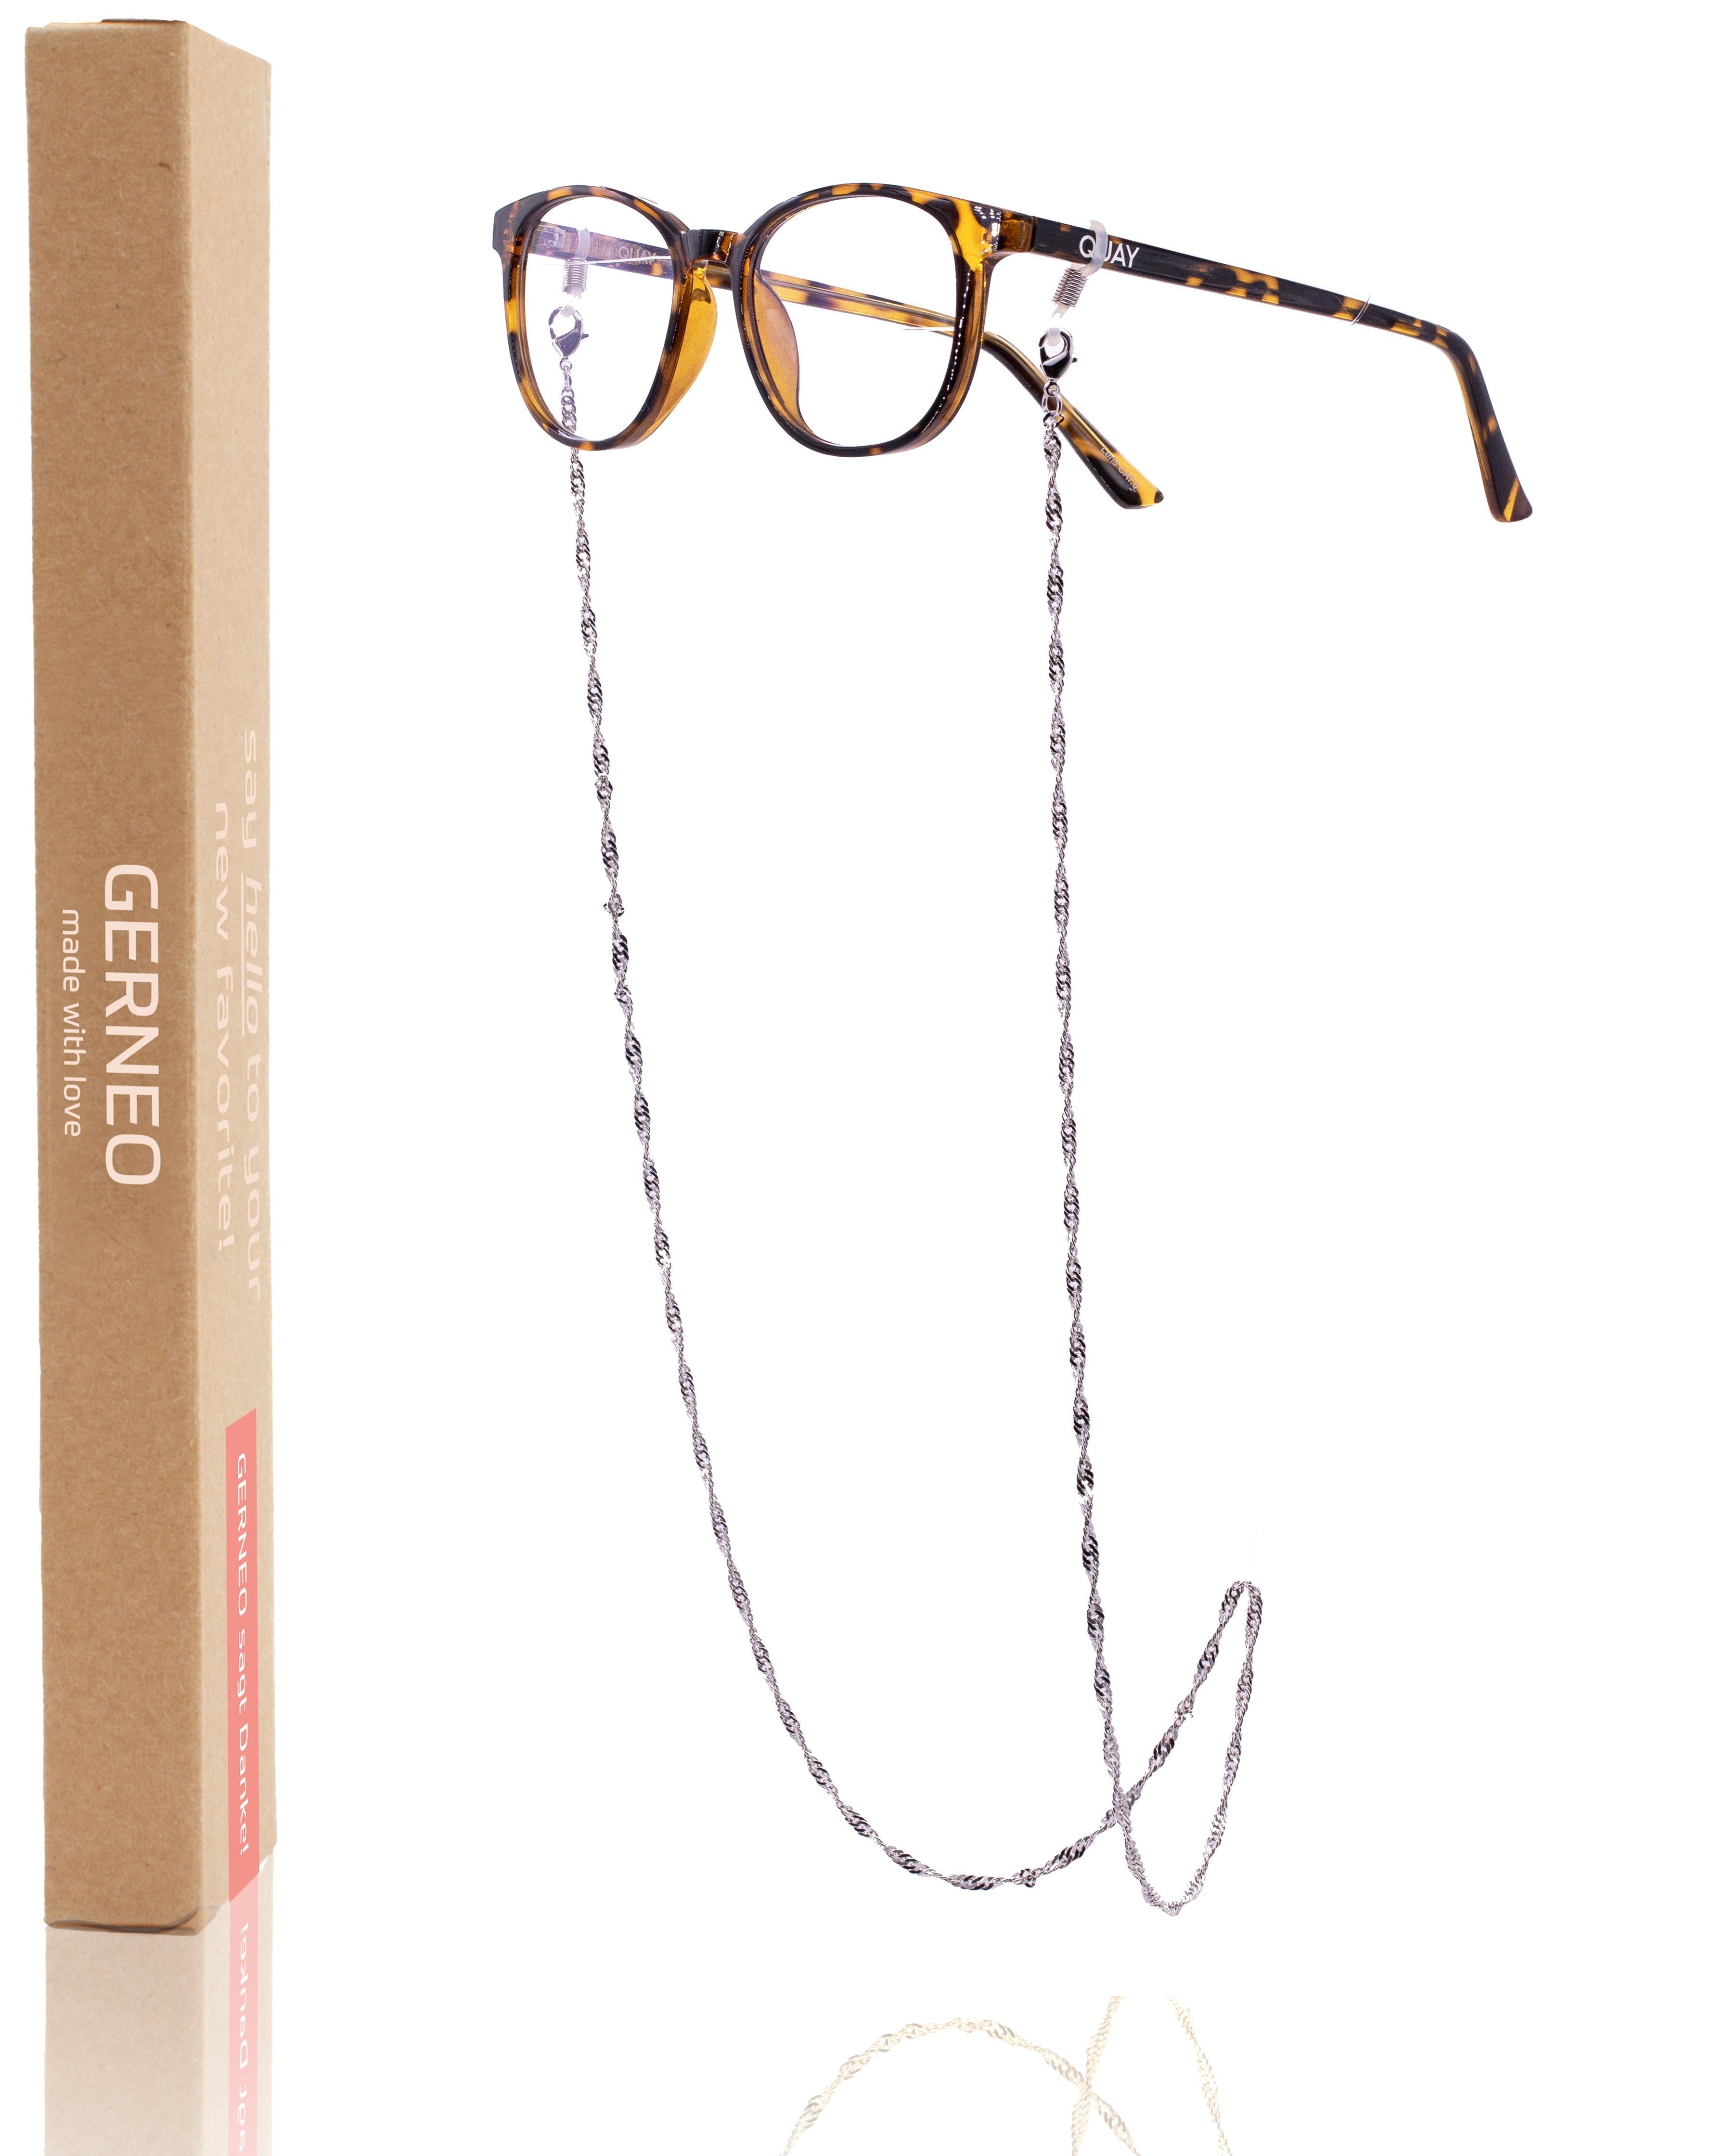 & einzigartig - Brillenkette Maskenhalter GERNEO® Brillenkette Silber, hochwertige Brillenband Kette korrosionsbeständig Toronto und GERNEO Brillen – Gold